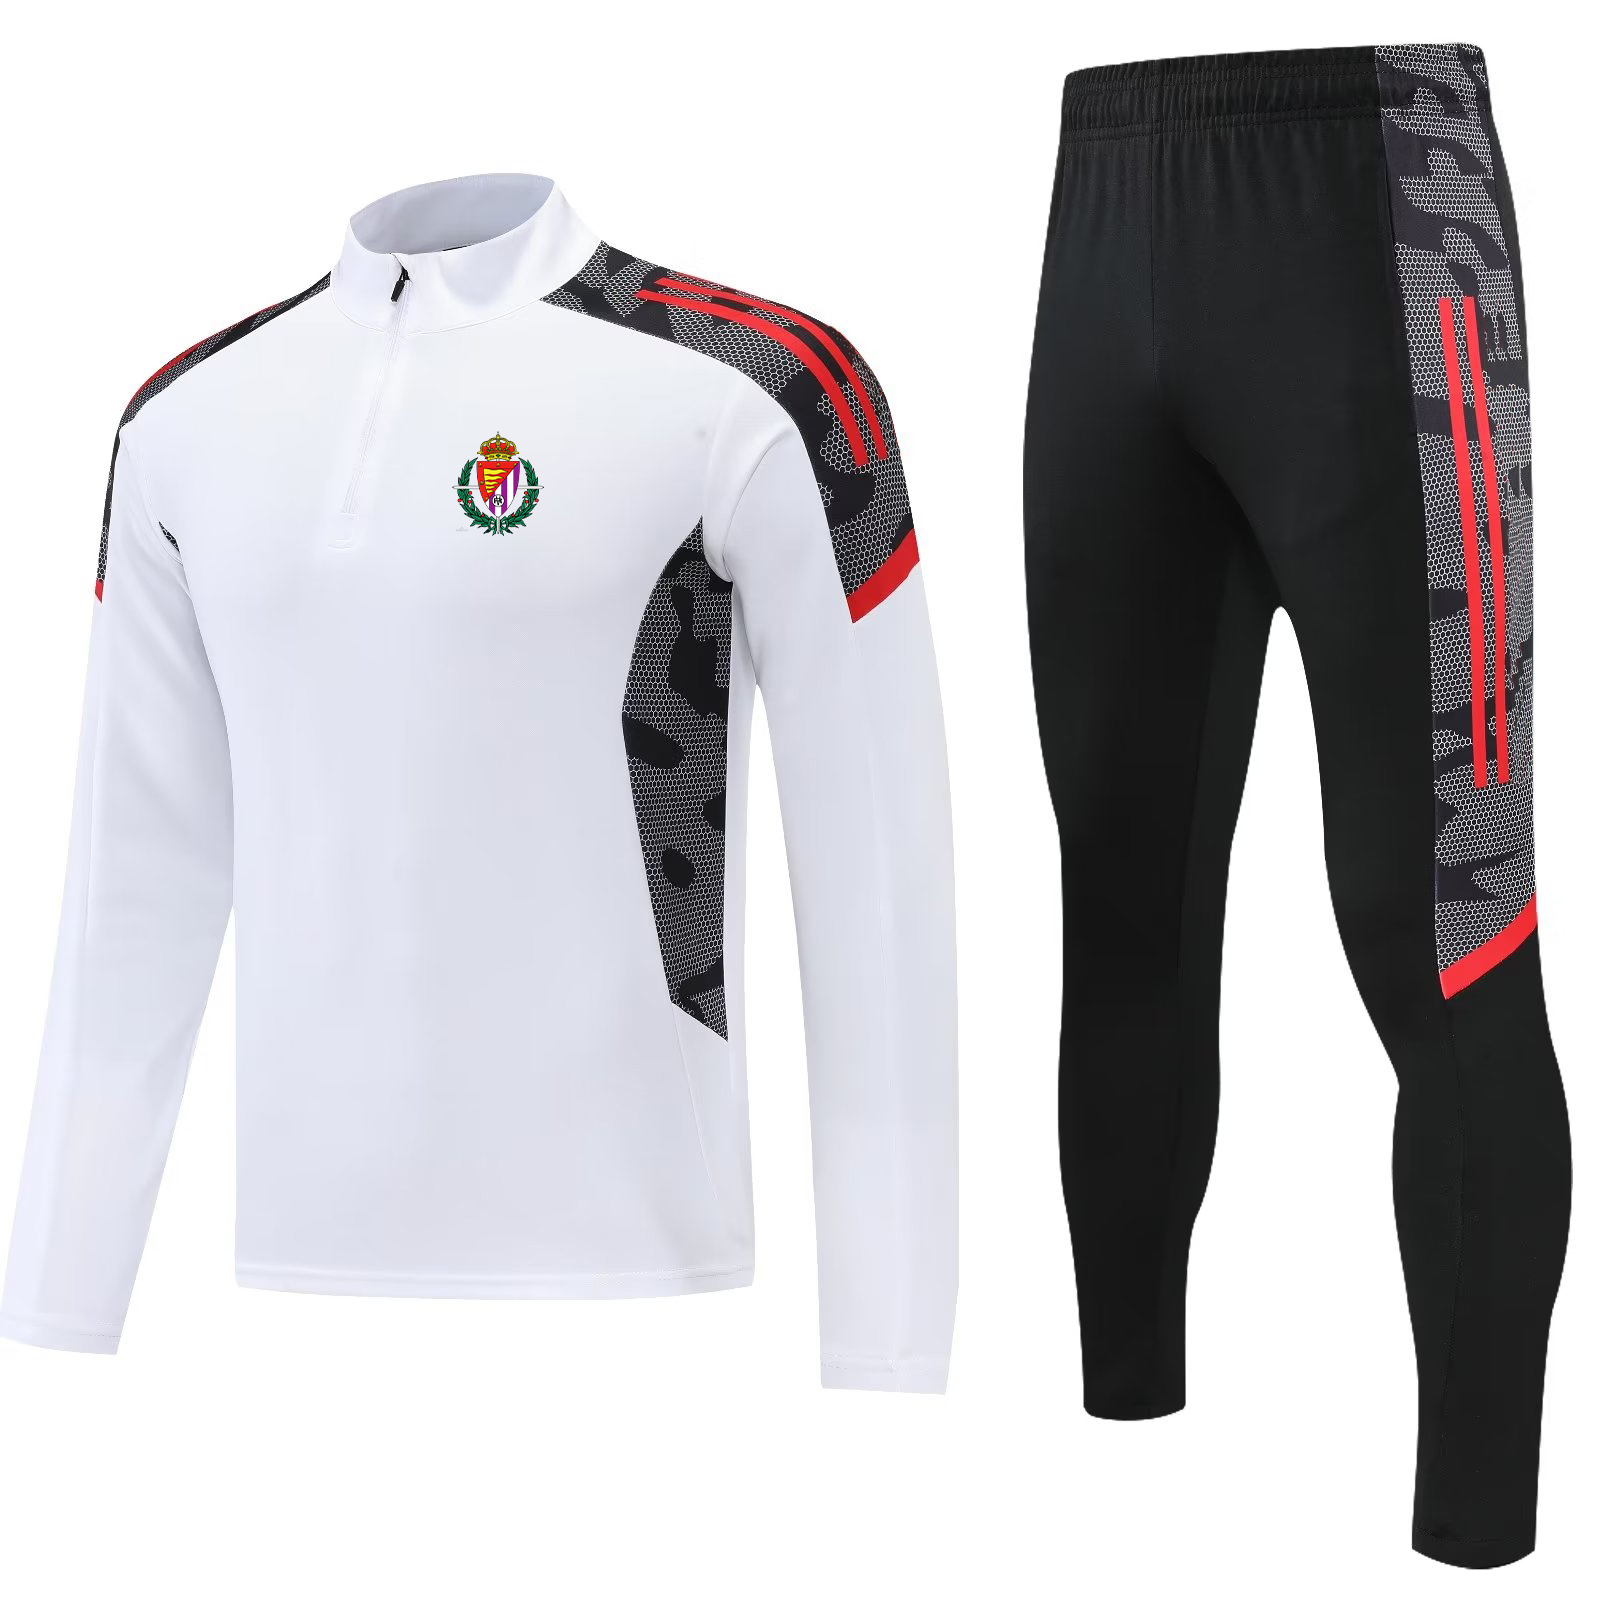 Real Valladolid Club de Futbol veste de survêtement pour hommes pantalons costumes d'entraînement de football vêtements de sport vêtements de Jogging adulte Tracksuts243O